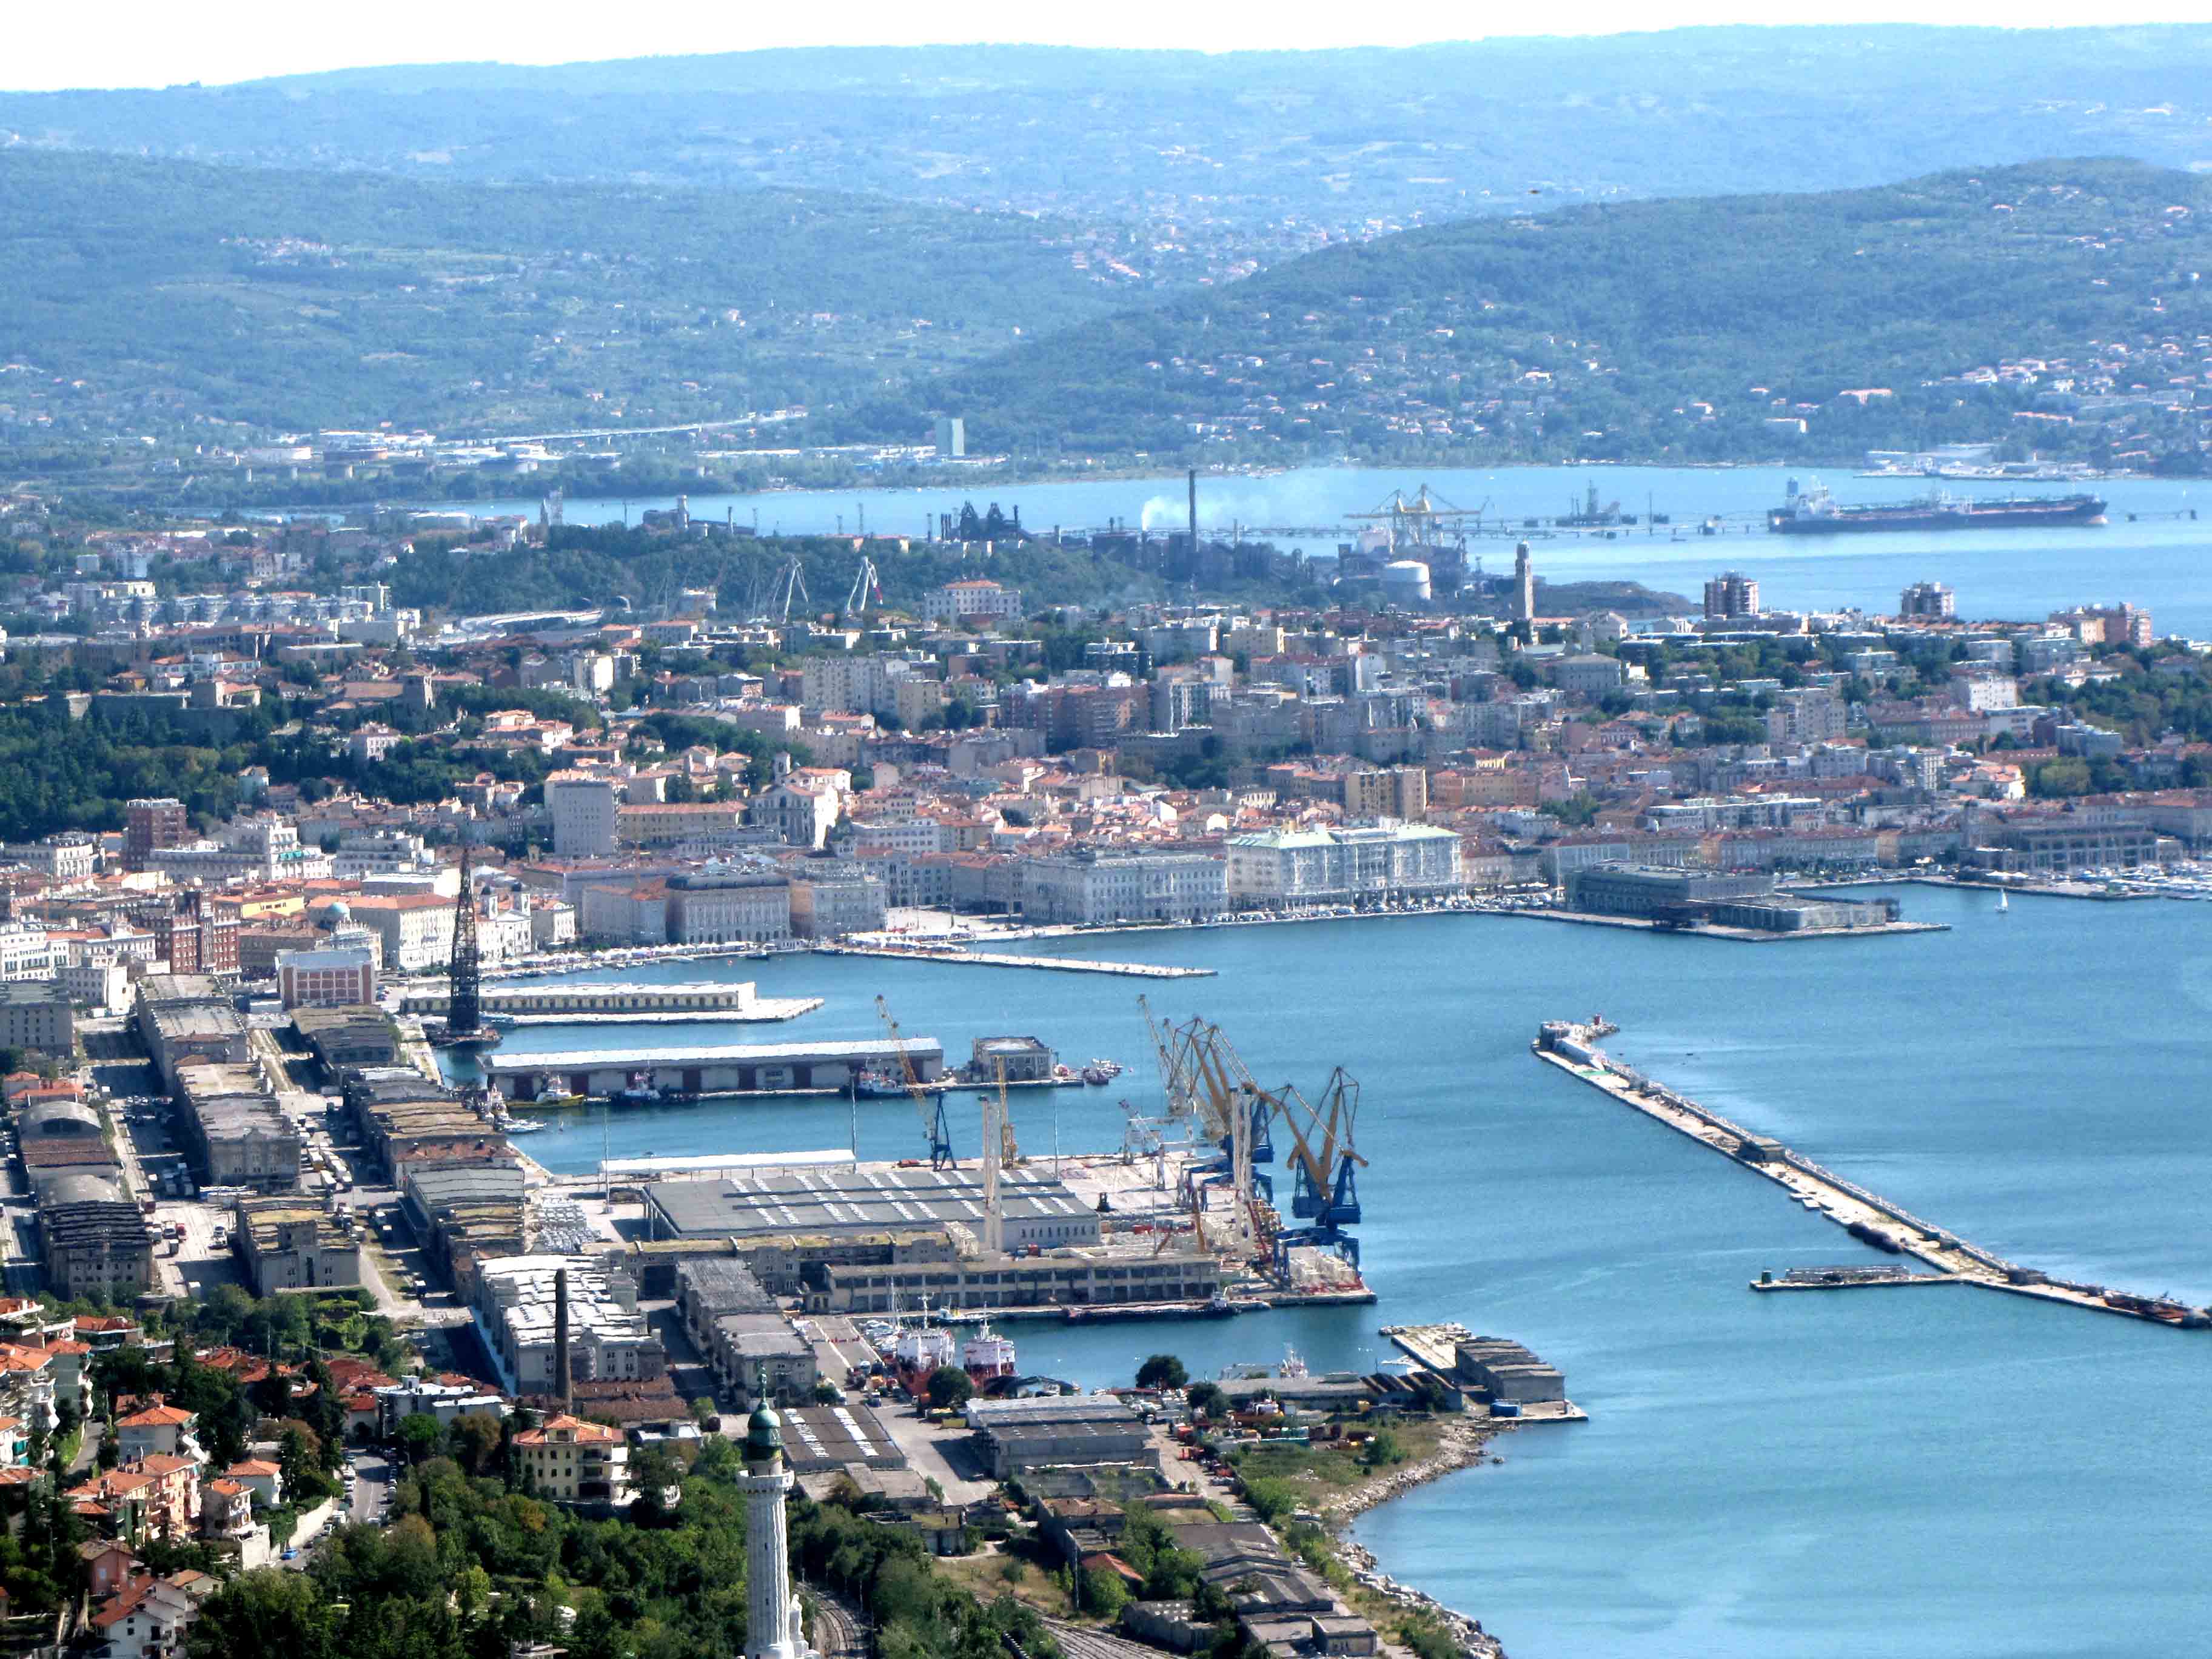 OPPRESSI ED OPPRESSORI. Il Porto Franco Nord, settore strategico del Porto Franco internazionale del Territorio Libero di Trieste.